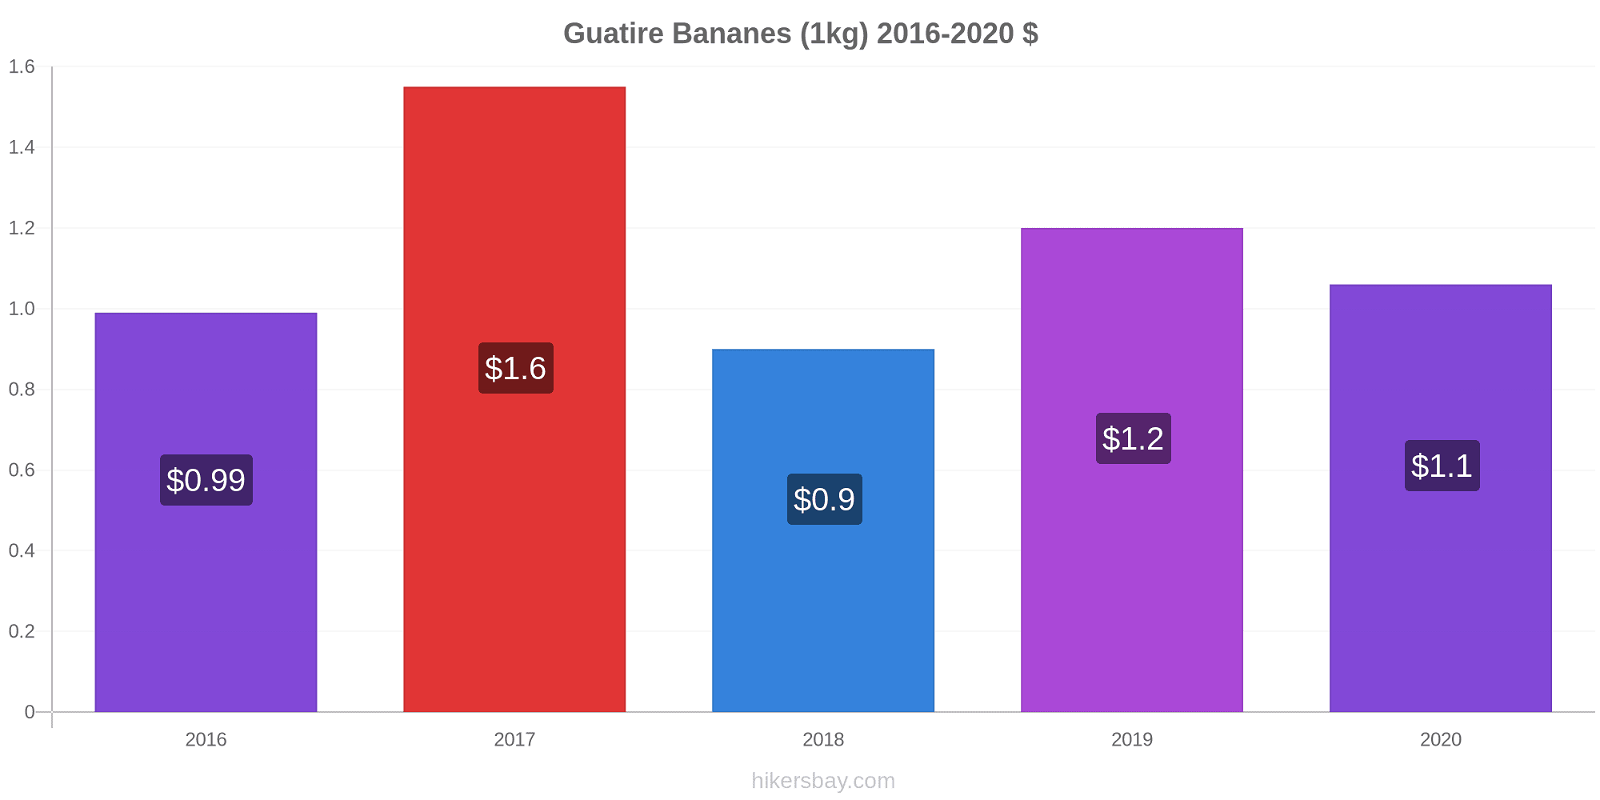 Guatire changements de prix Bananes (1kg) hikersbay.com